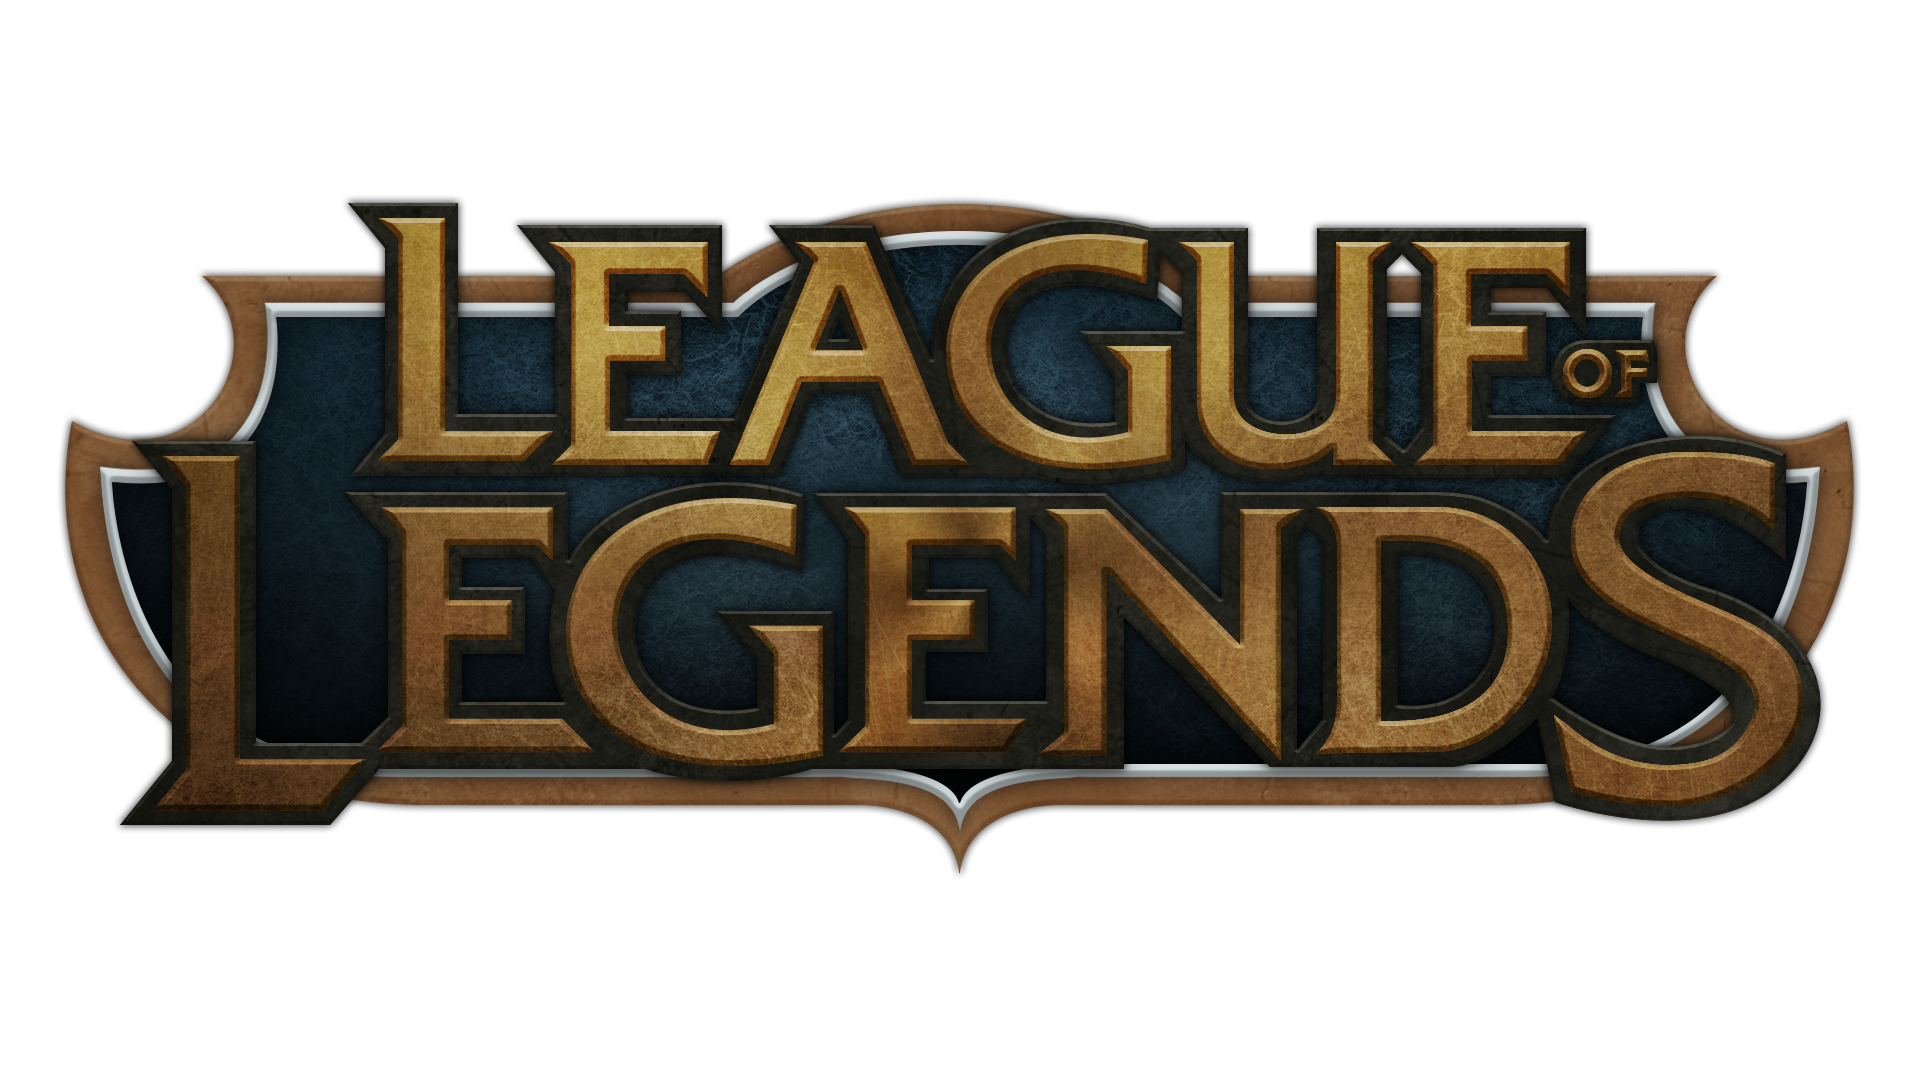 League Of Legends Download Pn